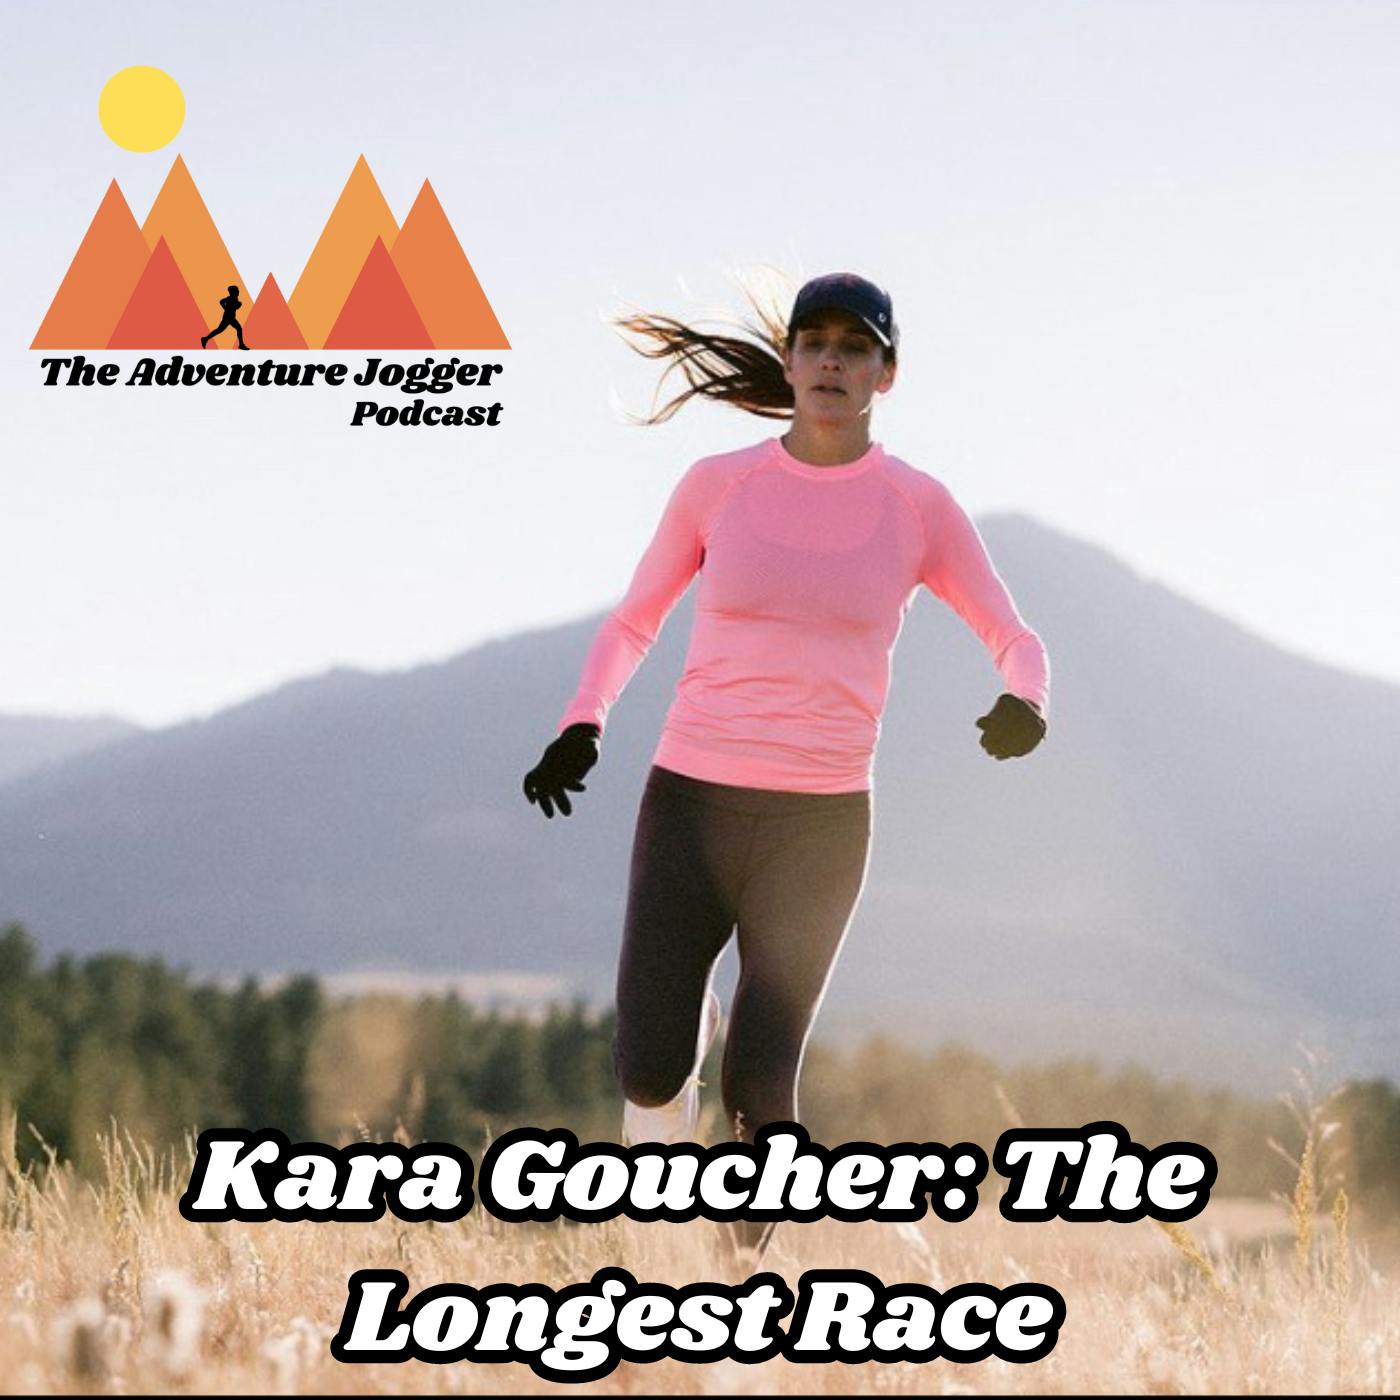 Kara Goucher: The Longest Race